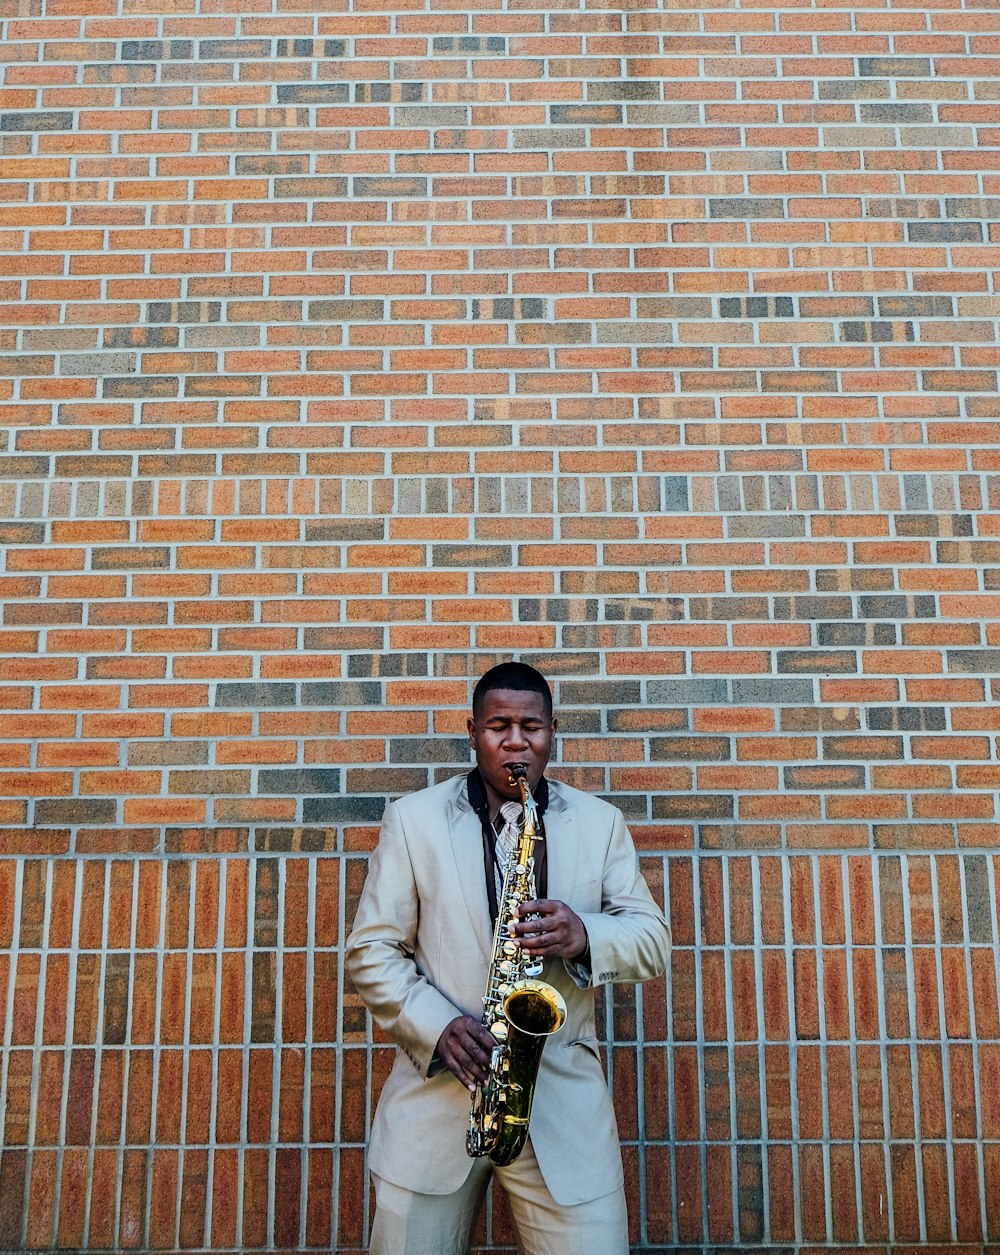 Mann spielt Saxophon in der Nähe von Betonziegeln